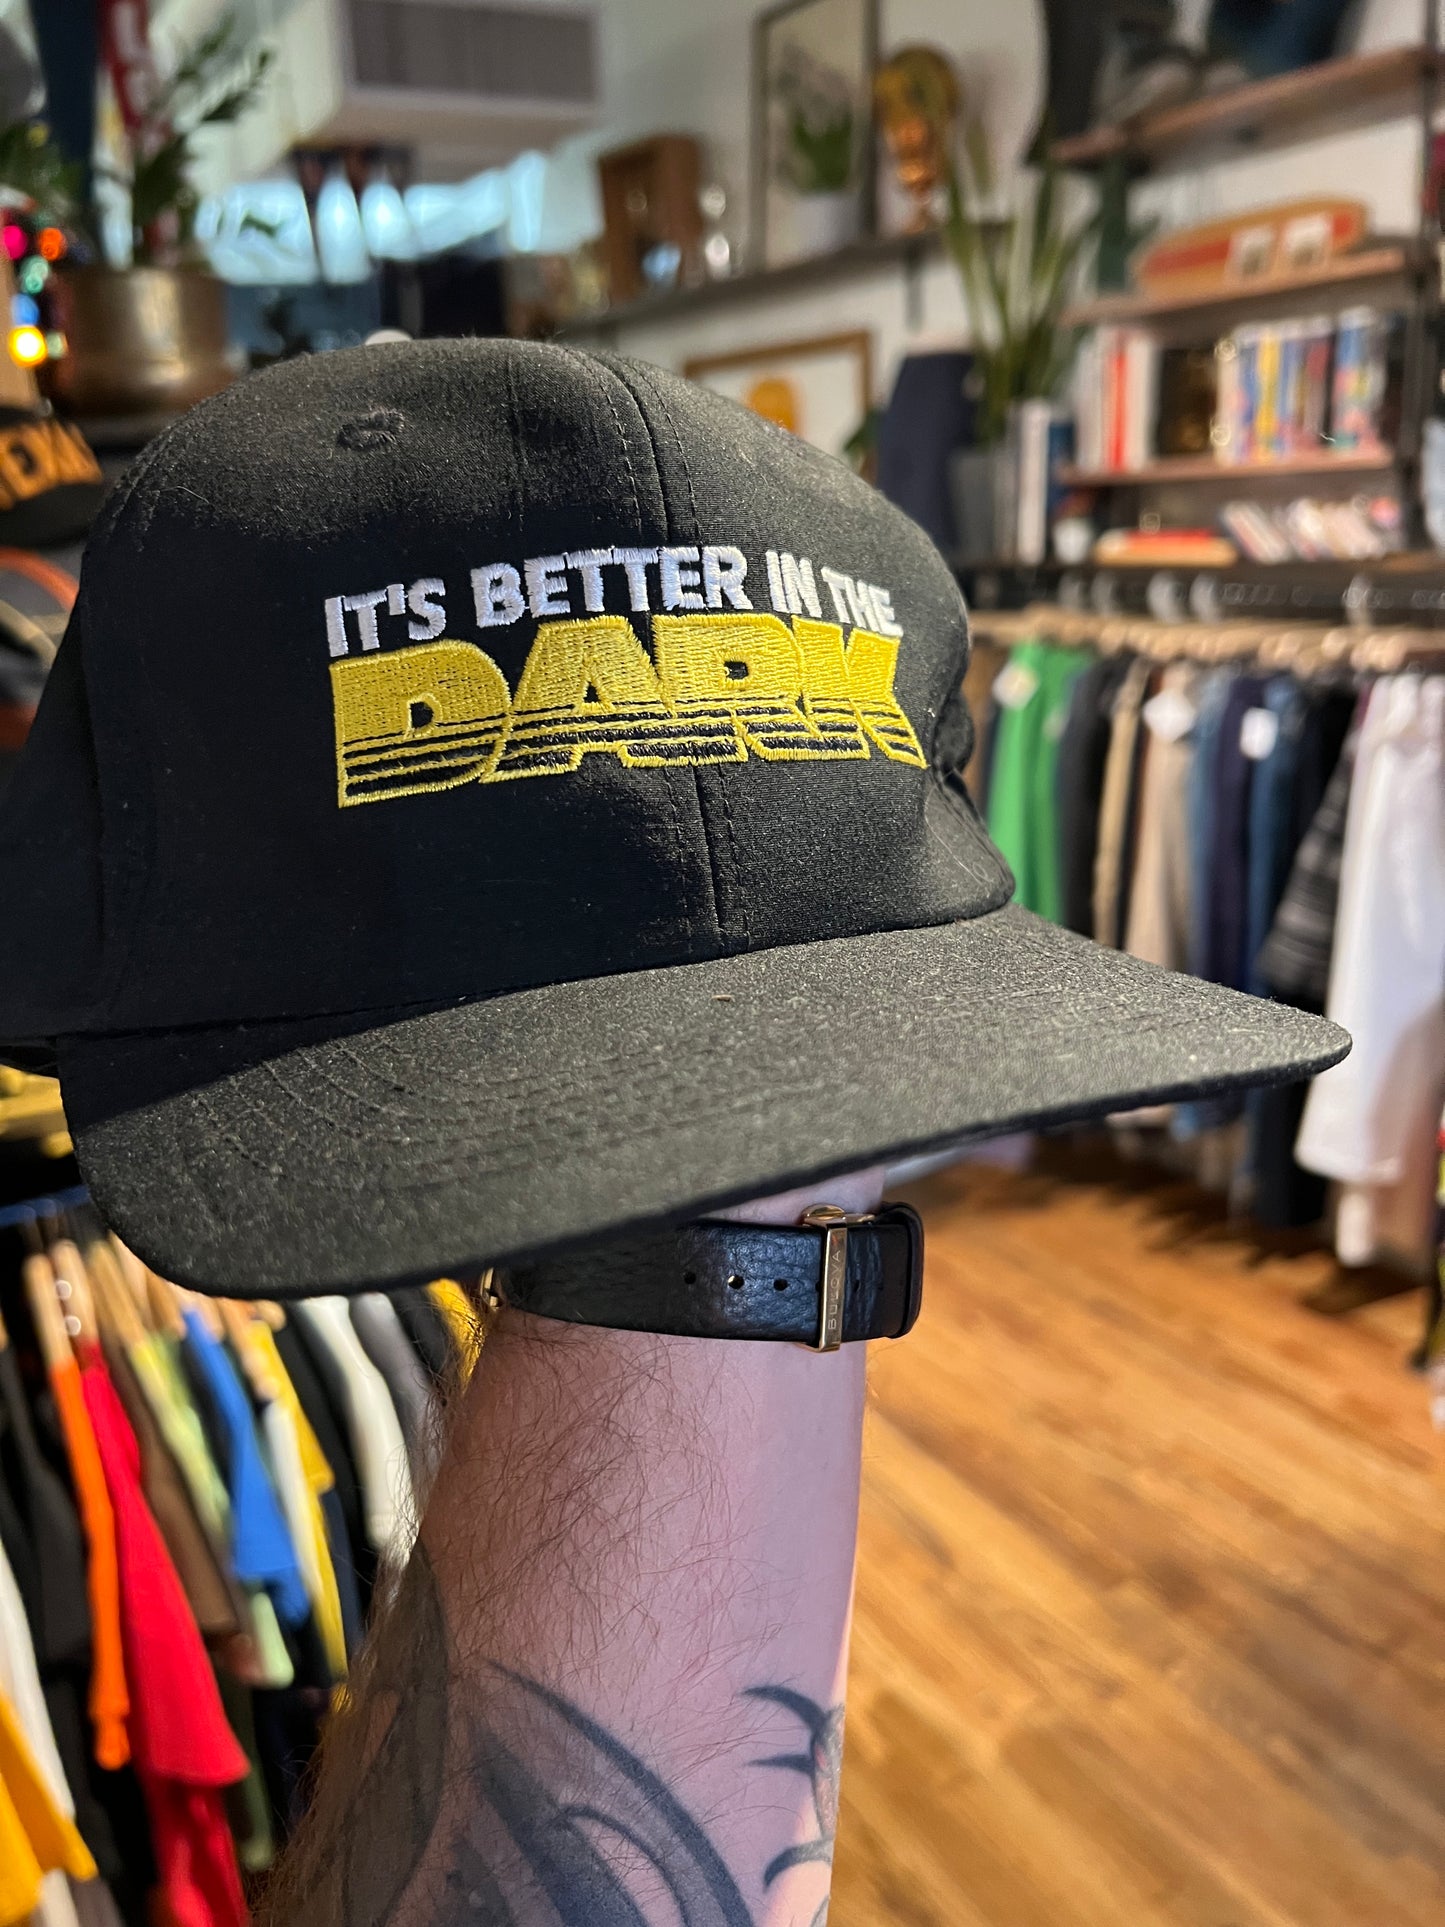 Meyers run “it’s better in the dark” SnapBack hat